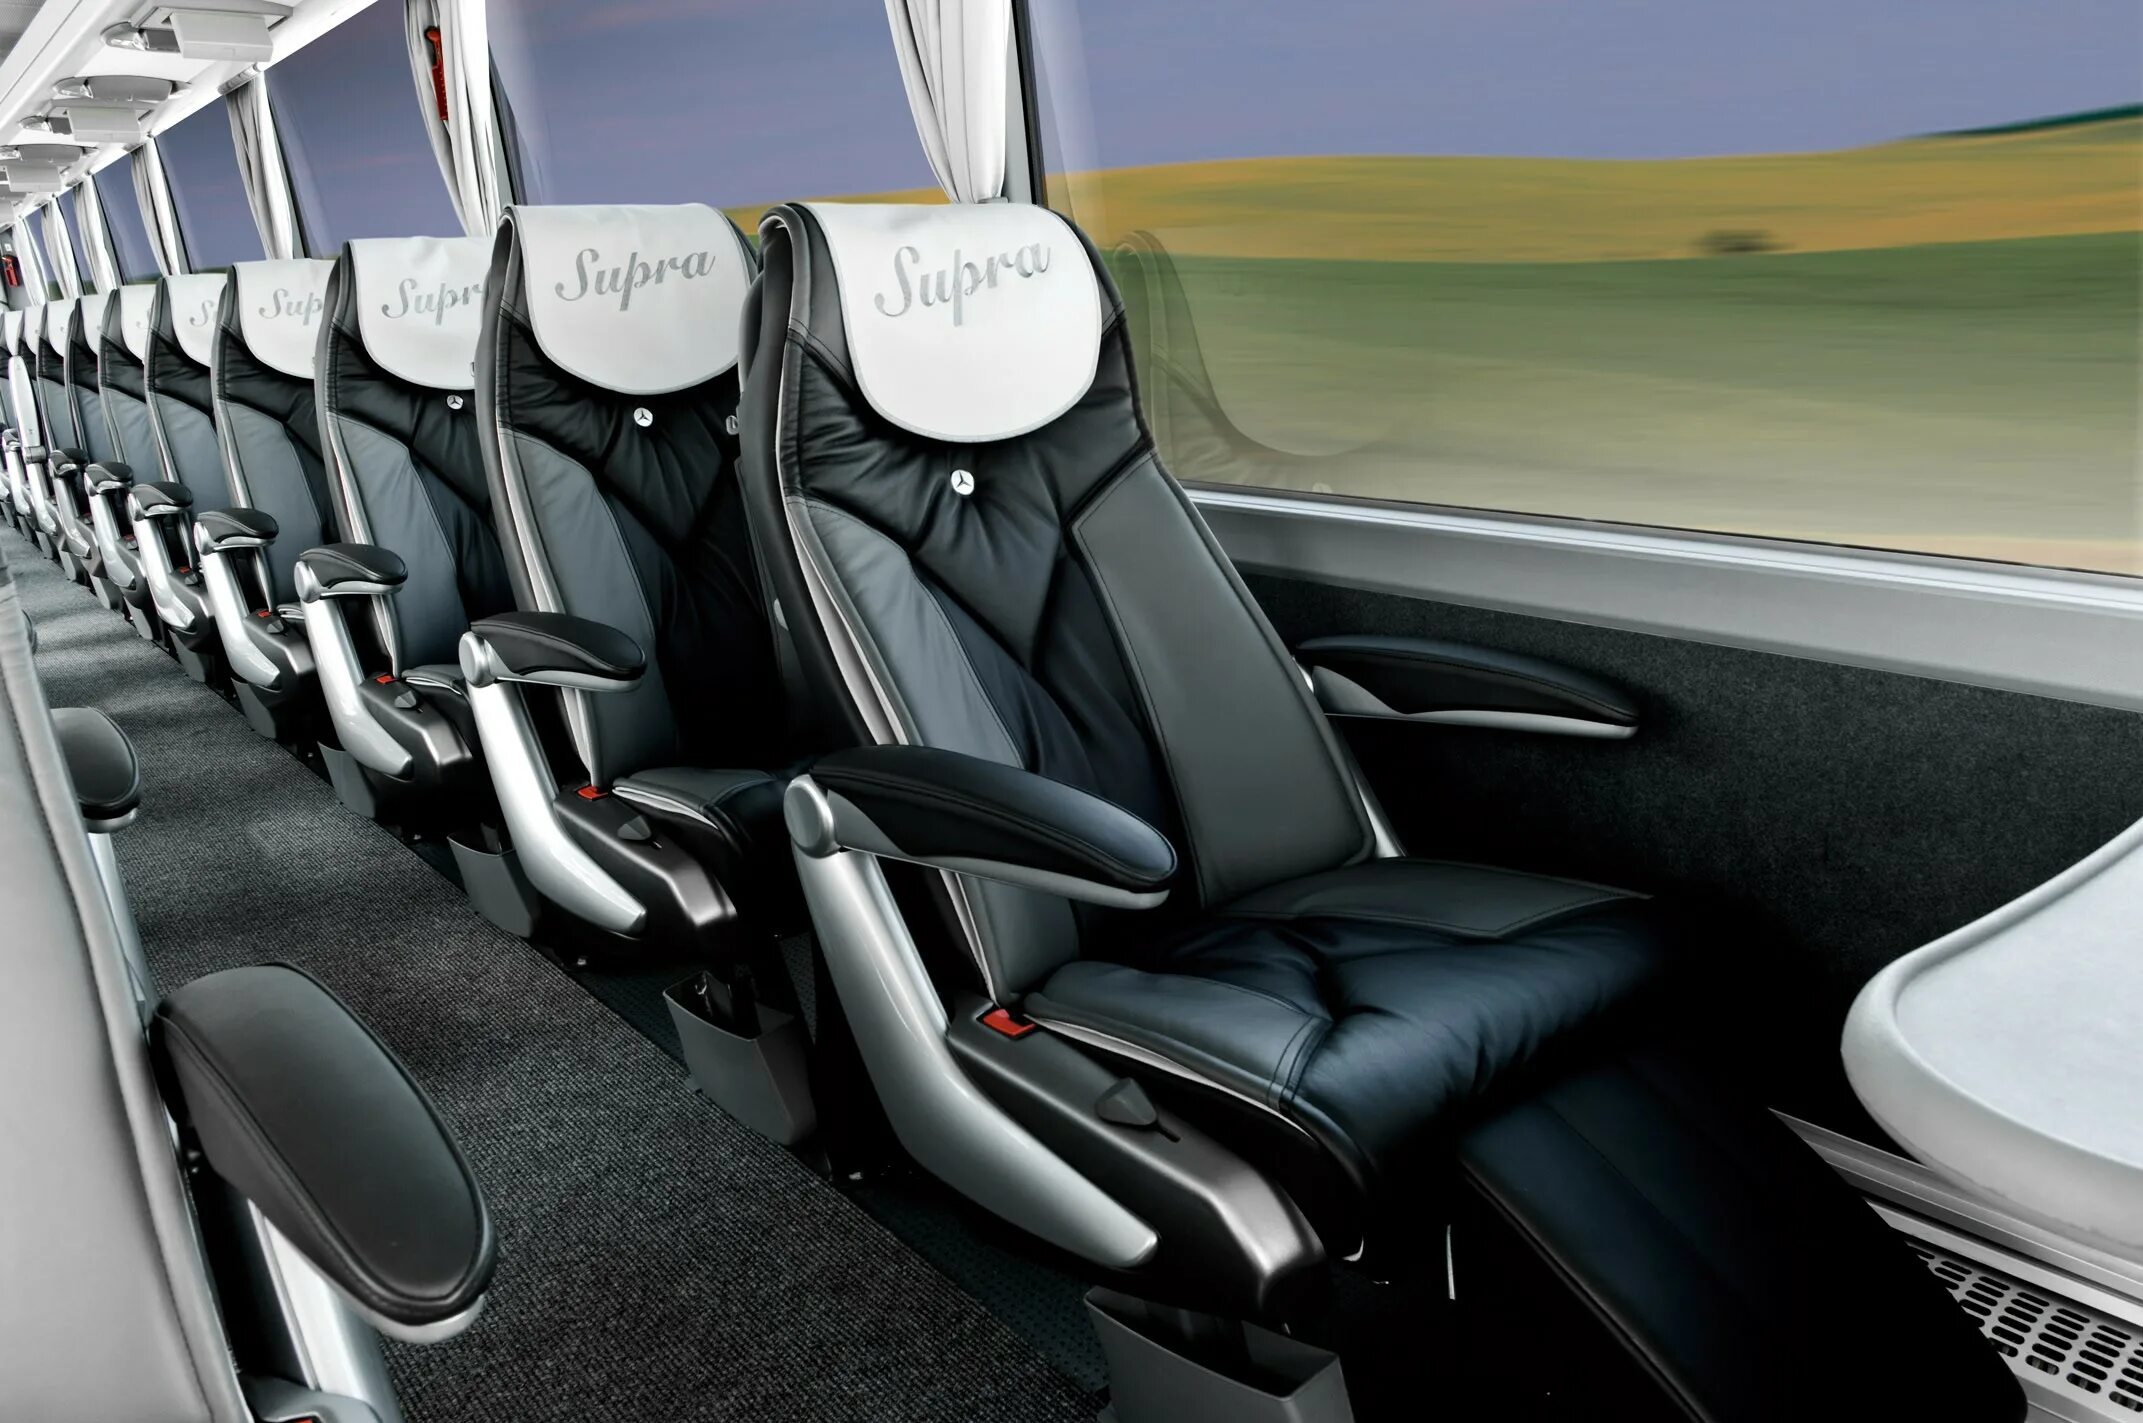 Bus seats. Регулируемые кресла комфорт автобус. Alsa автобусы в Испании. Вип автобусы фото.